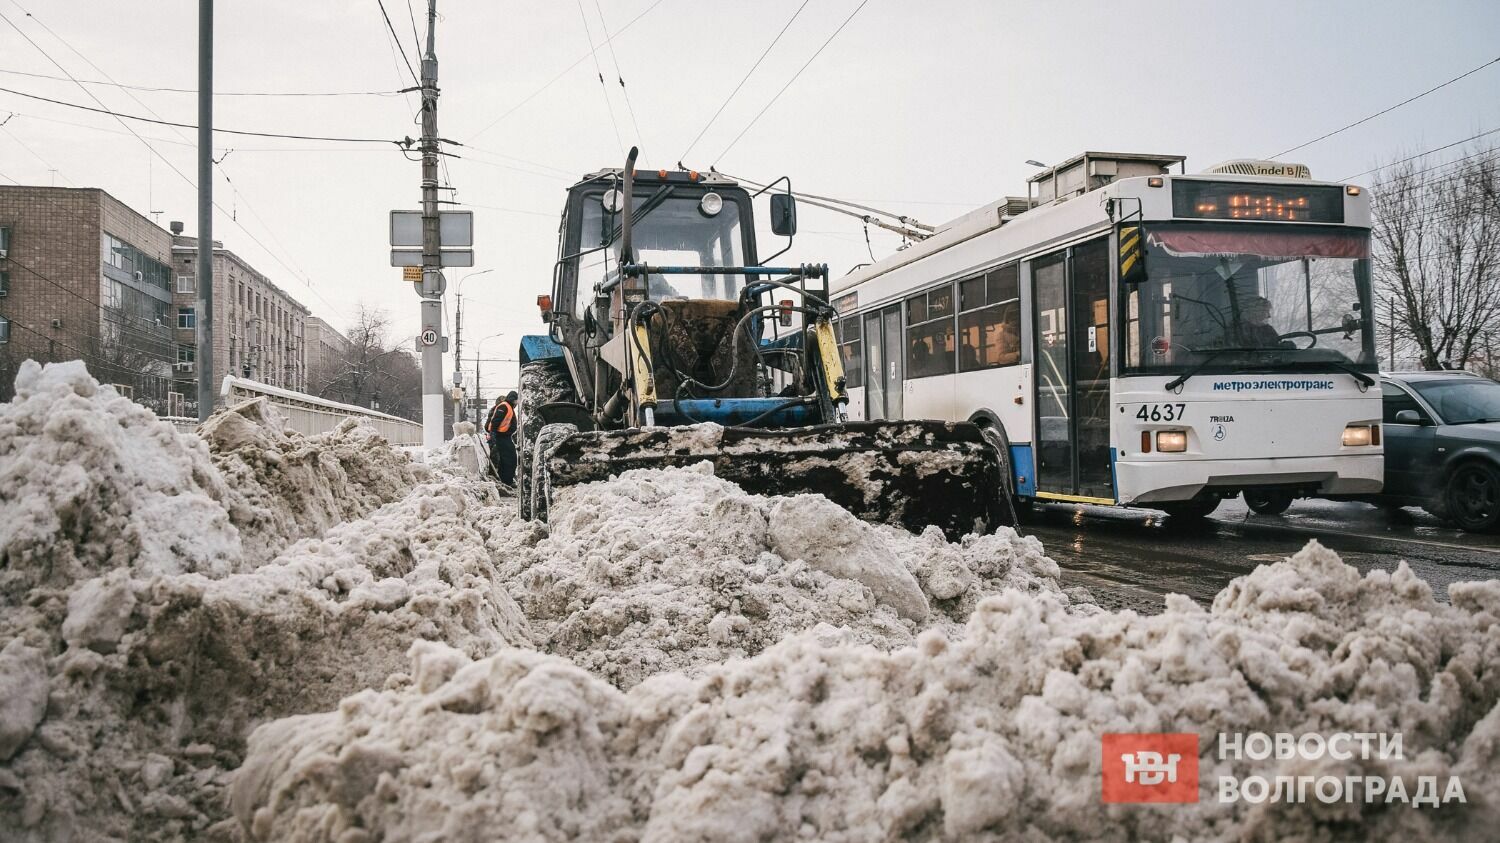 Волгоградцы регулярно жалуются на не своевременную уборку проезжей части от снега